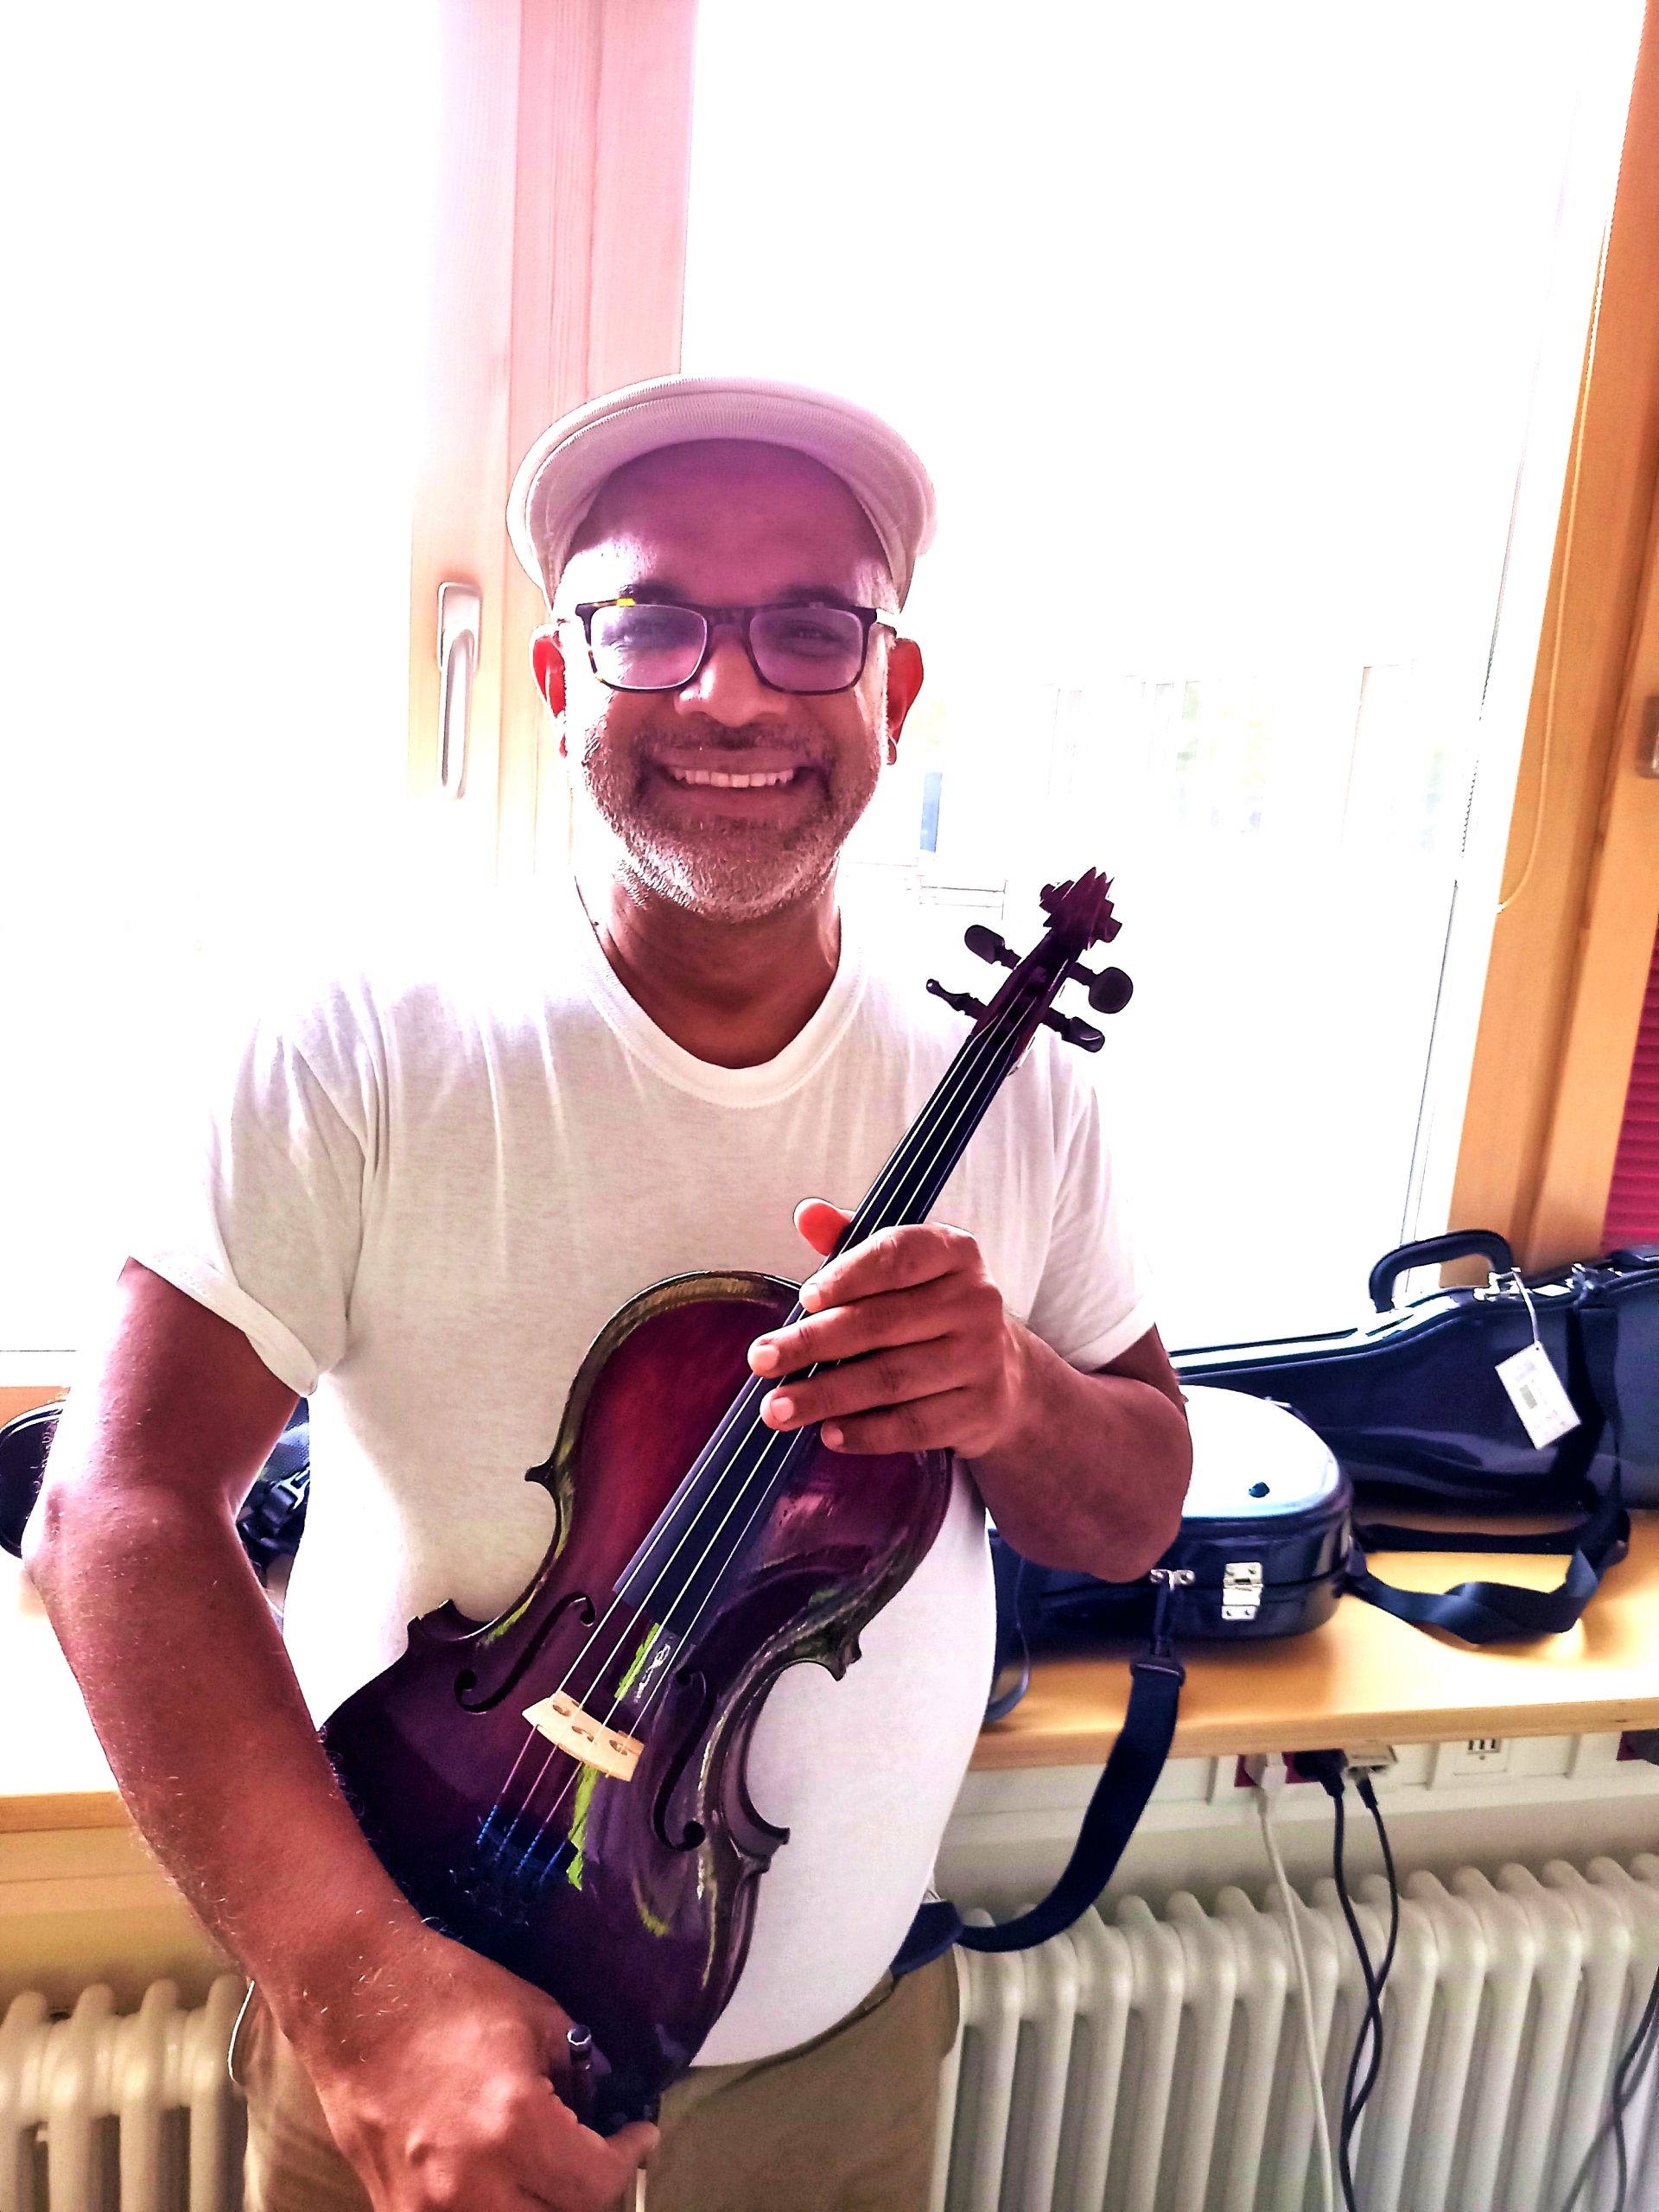 Gino mit der neuen Geige in den Händen